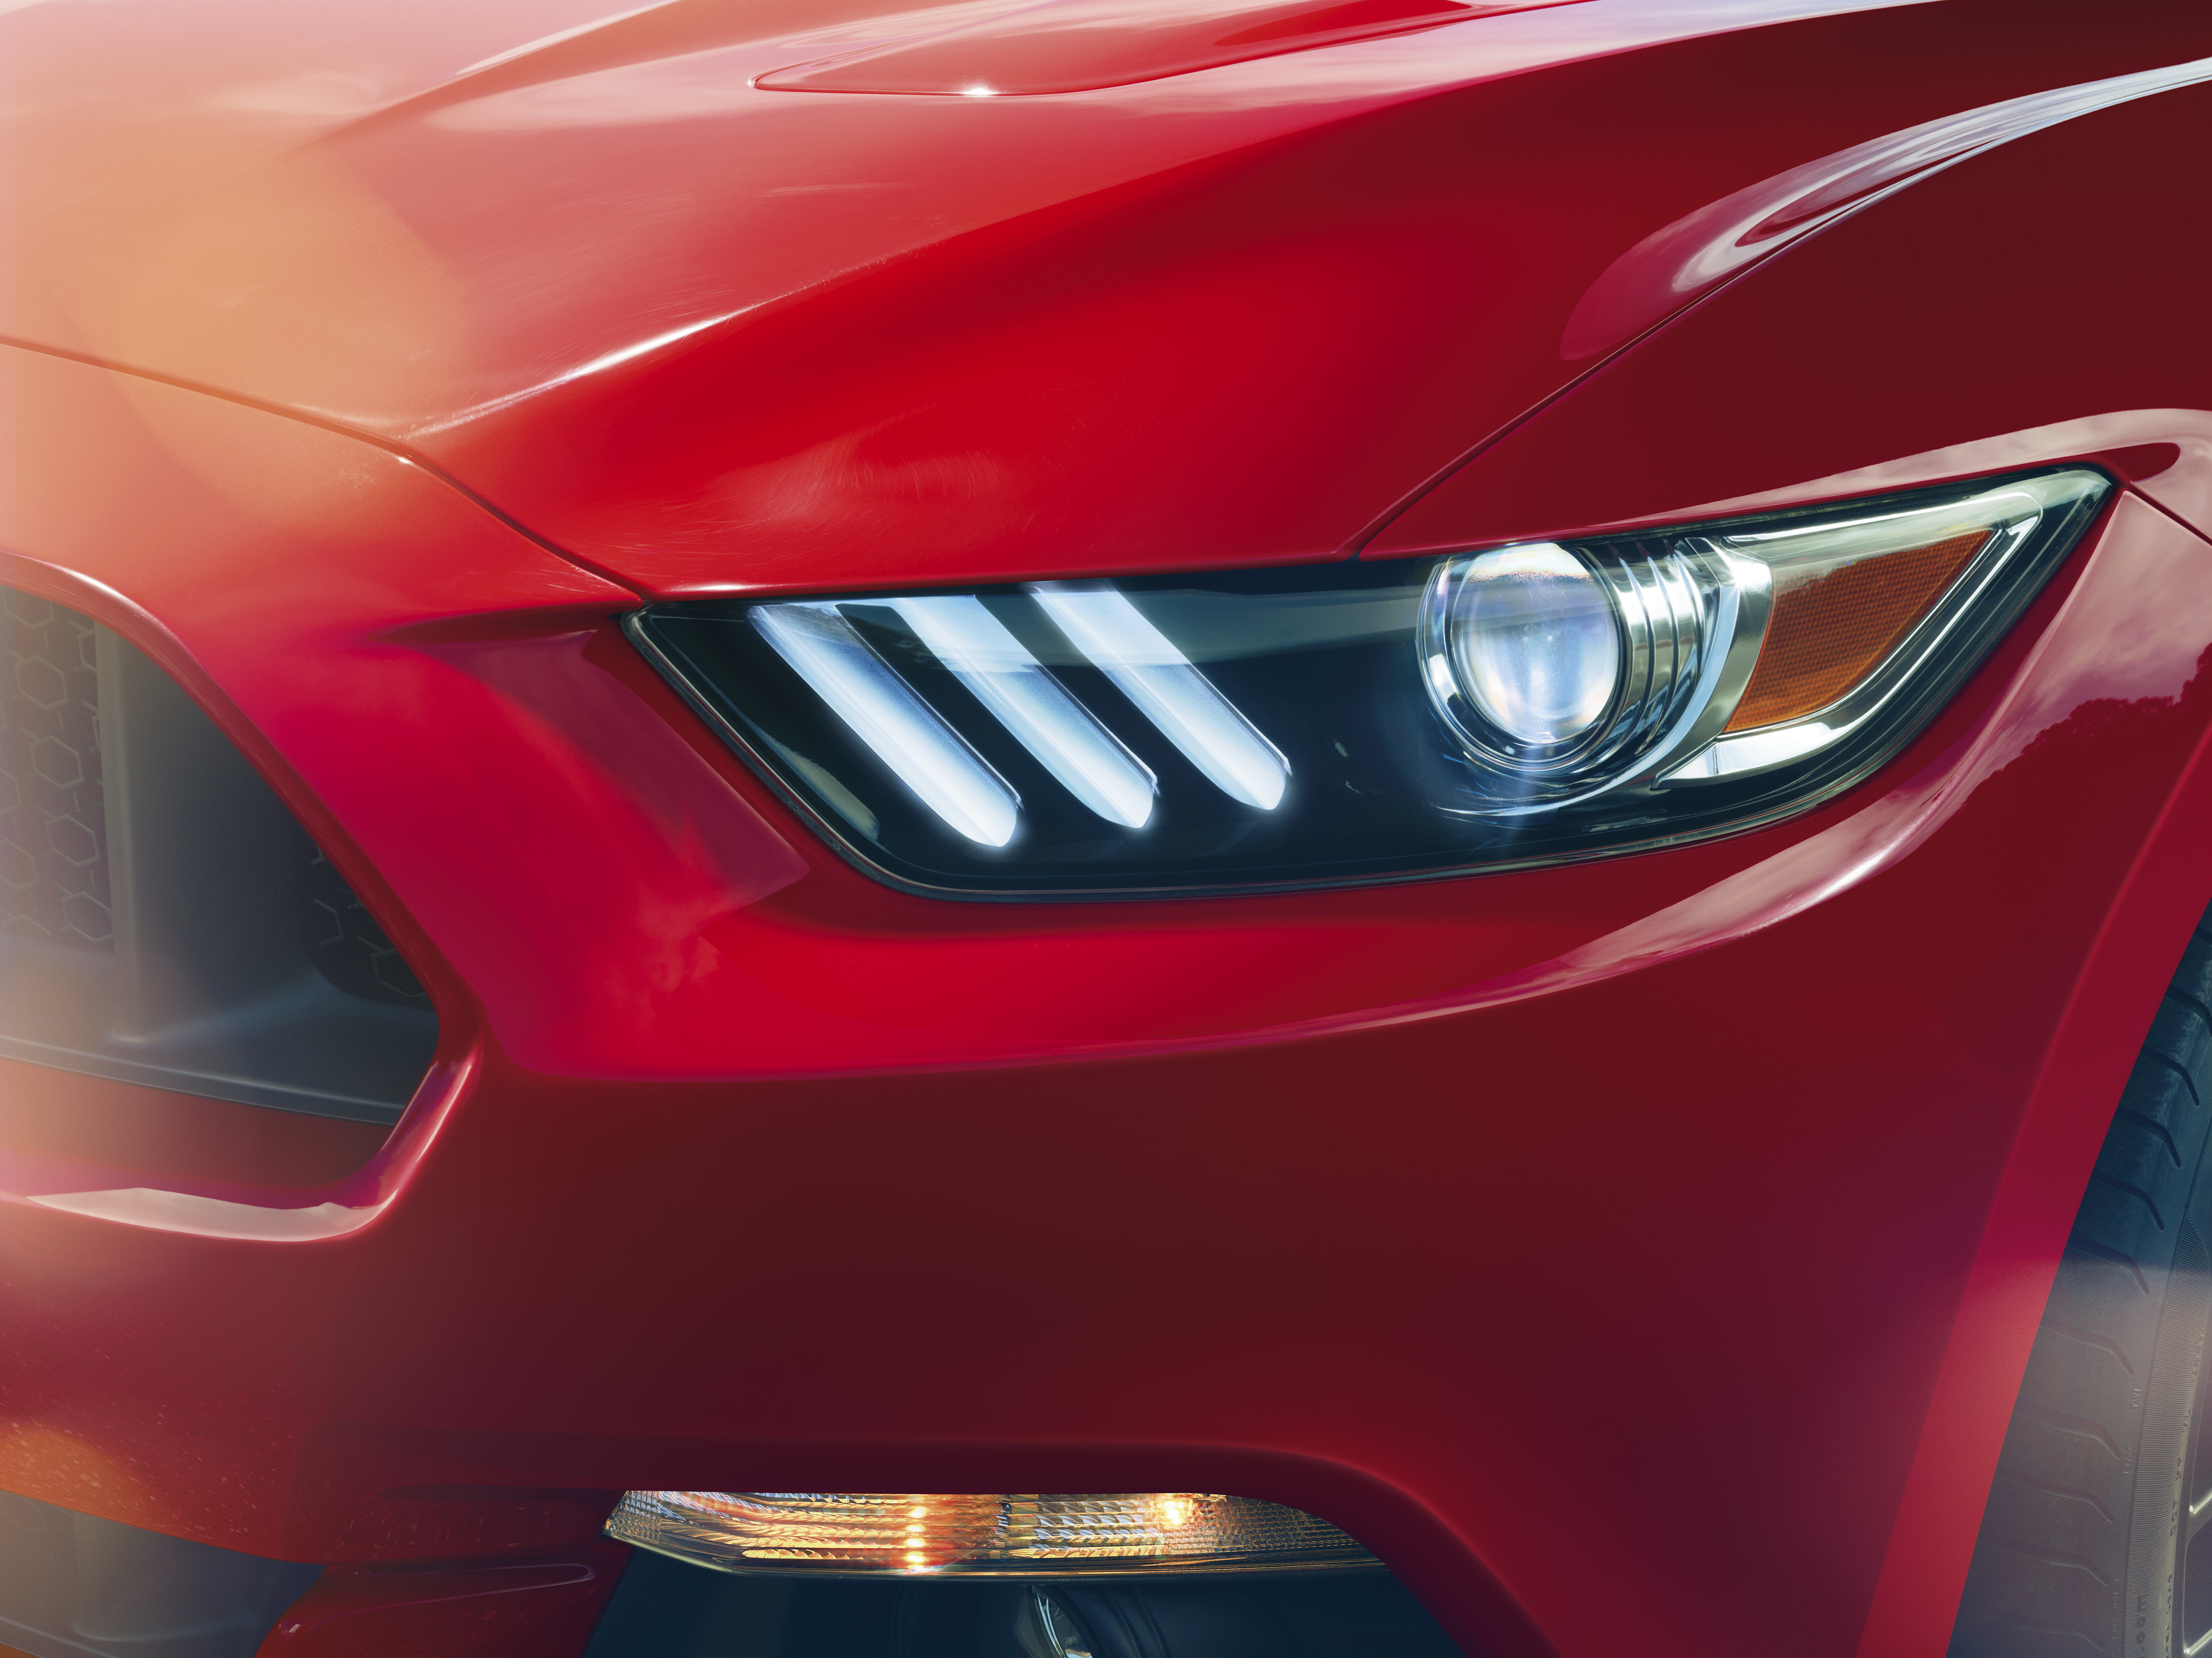 Télécharger des fonds d'écran Ford Mustang 2015 HD